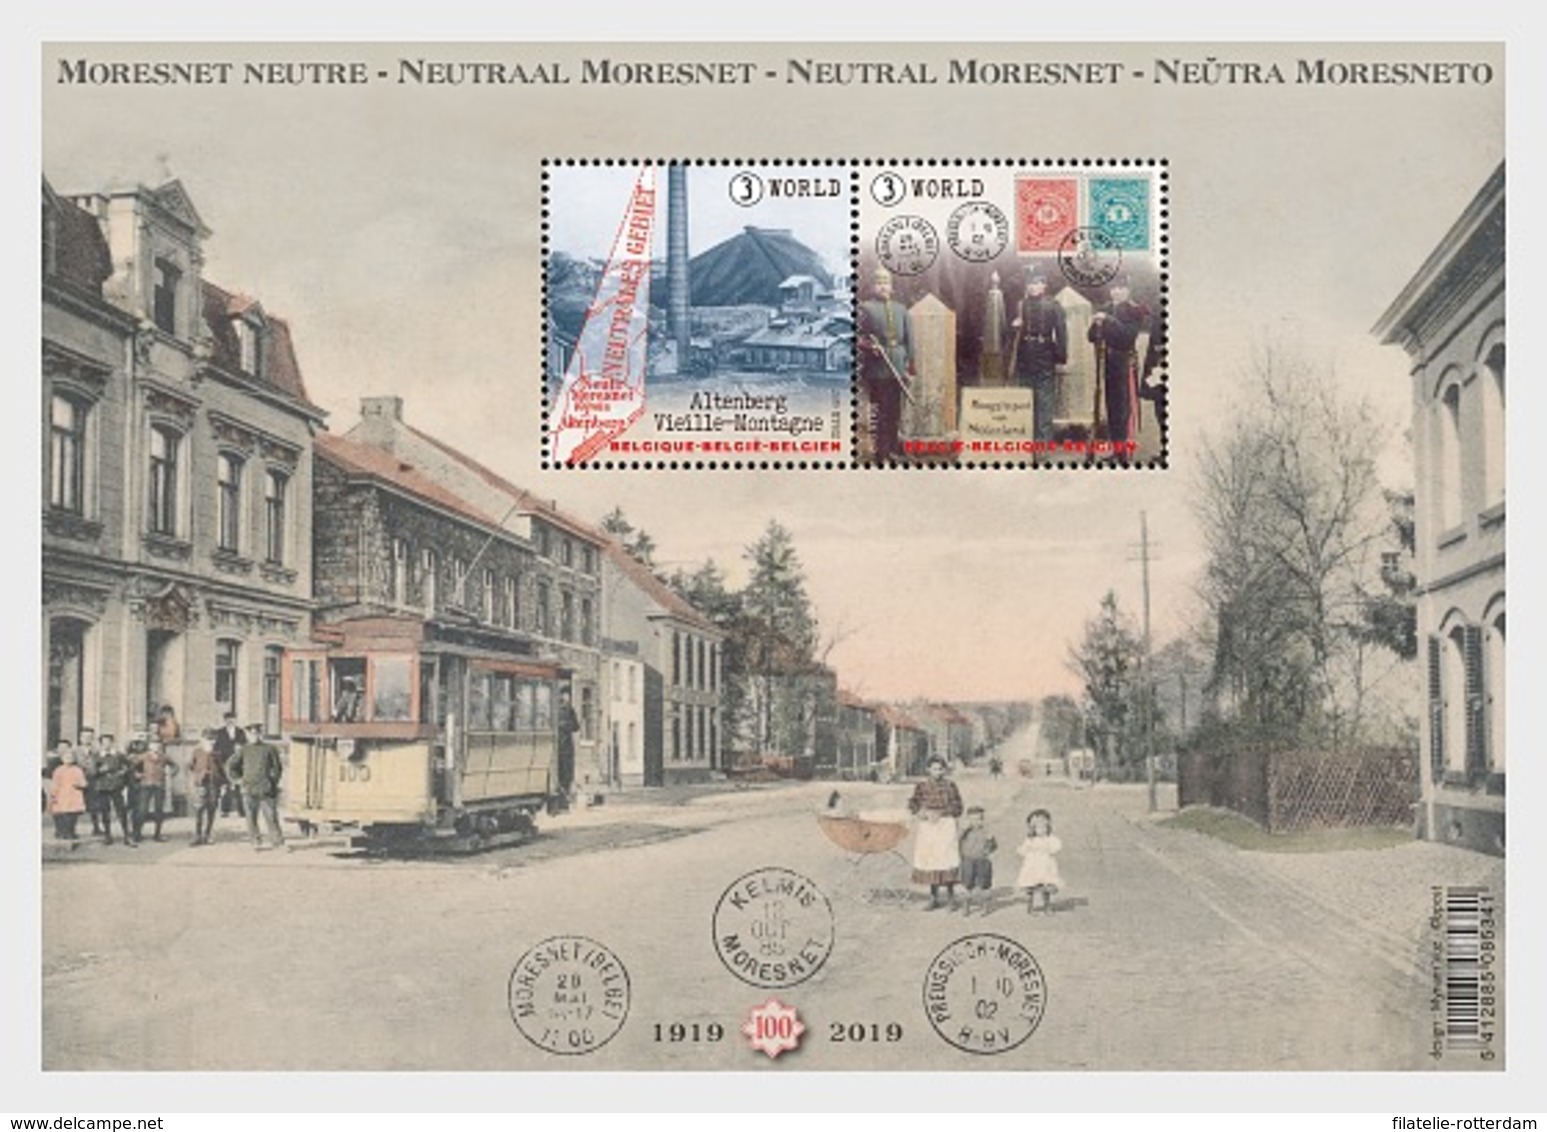 België / Belgium - Postfris / MNH - Sheet Leven In Moresnet 2019 - Ongebruikt